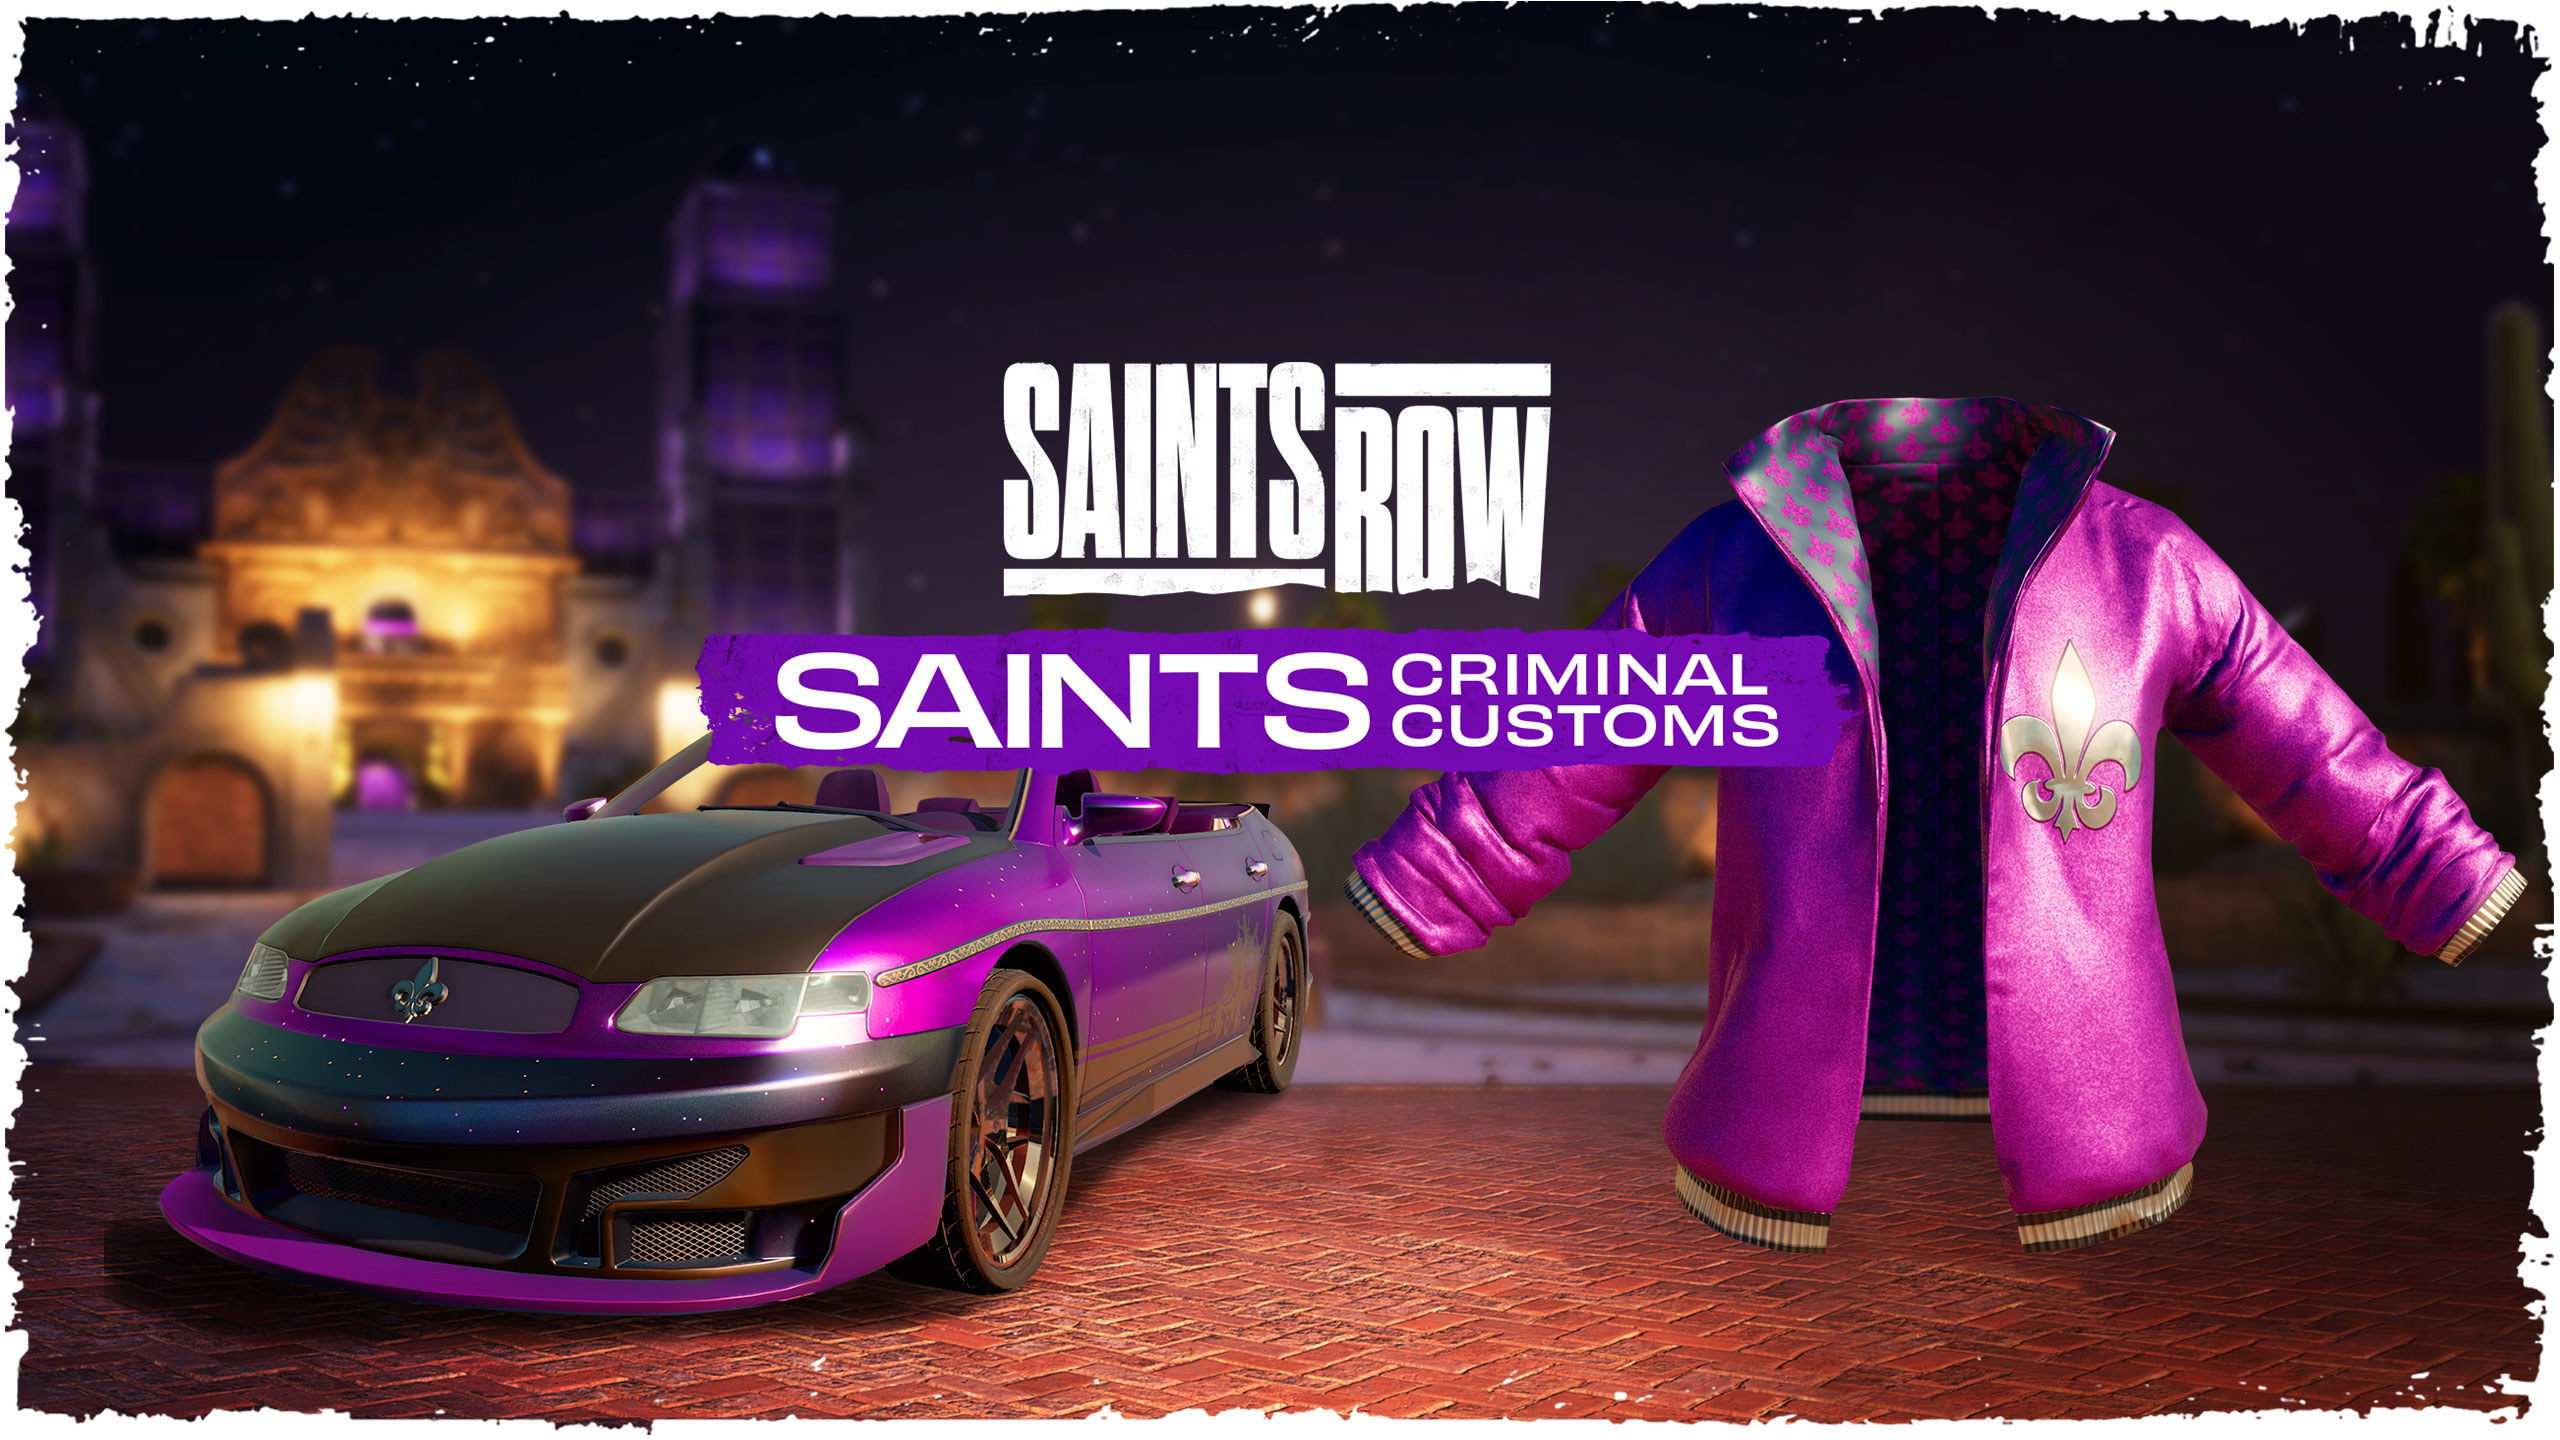 Saints Row - Saints Criminal Customs DLC Epic Games CD Key